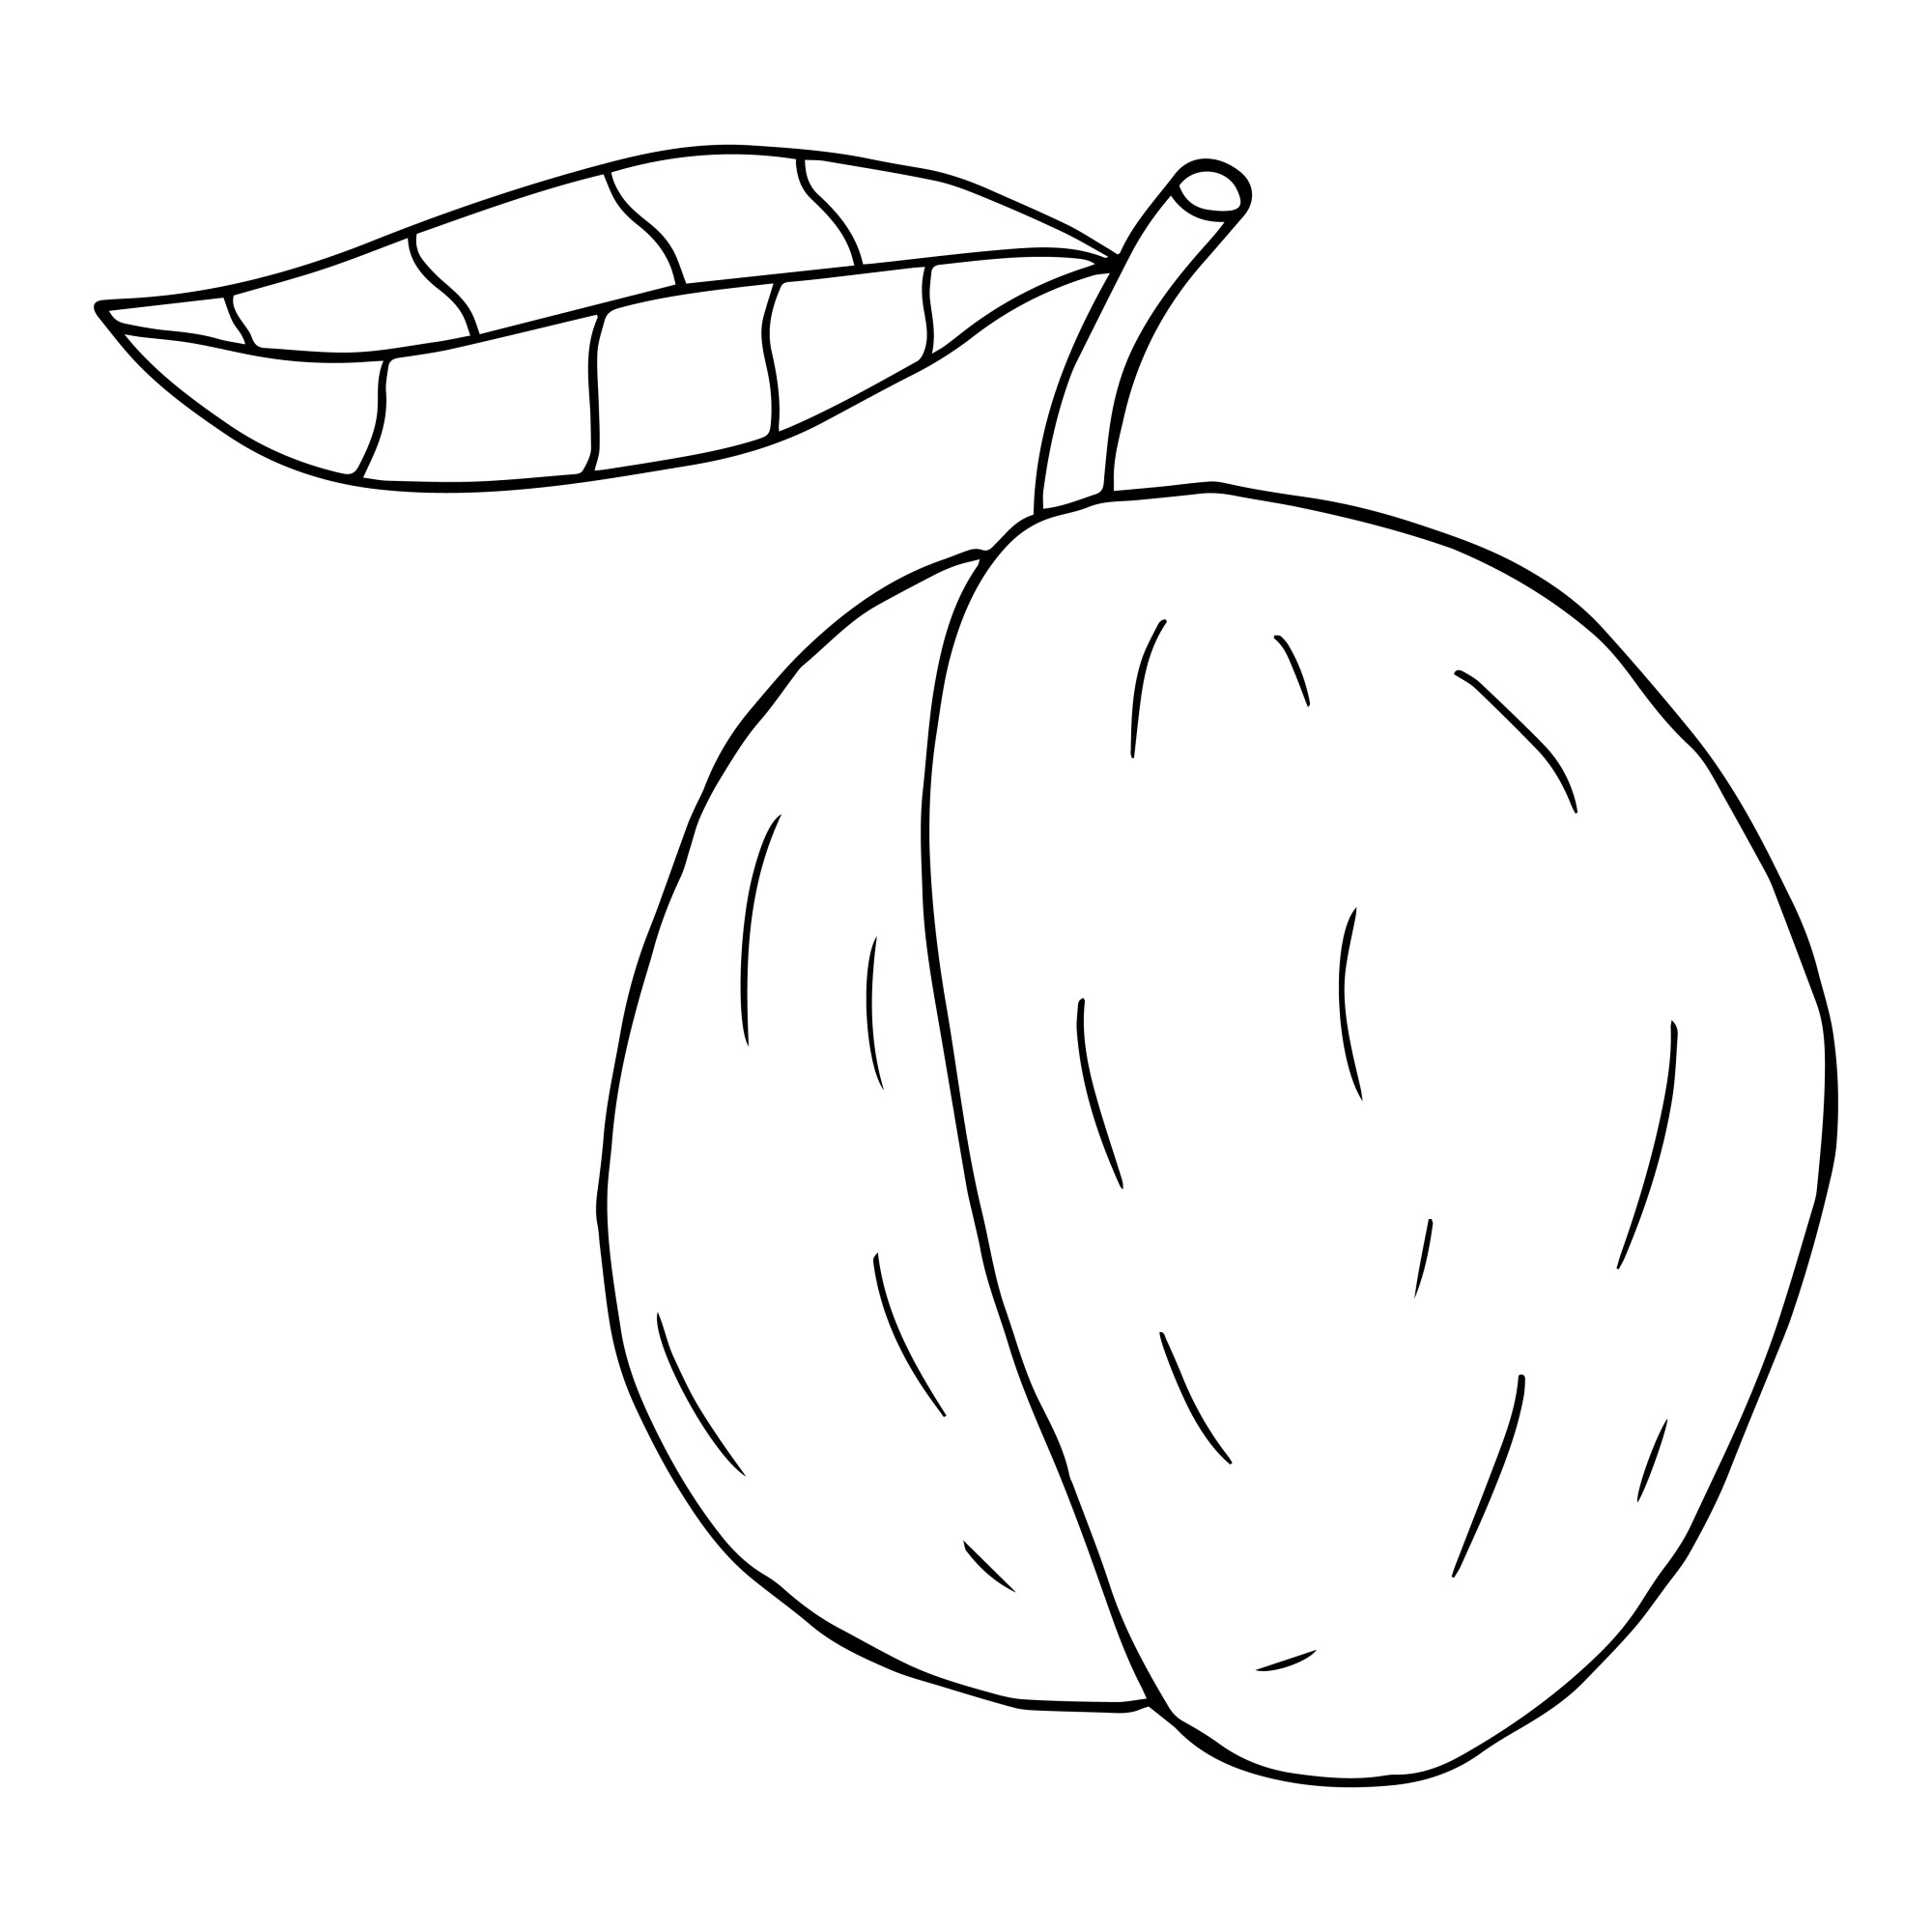 Раскраска для детей: фрукт слива с листиком